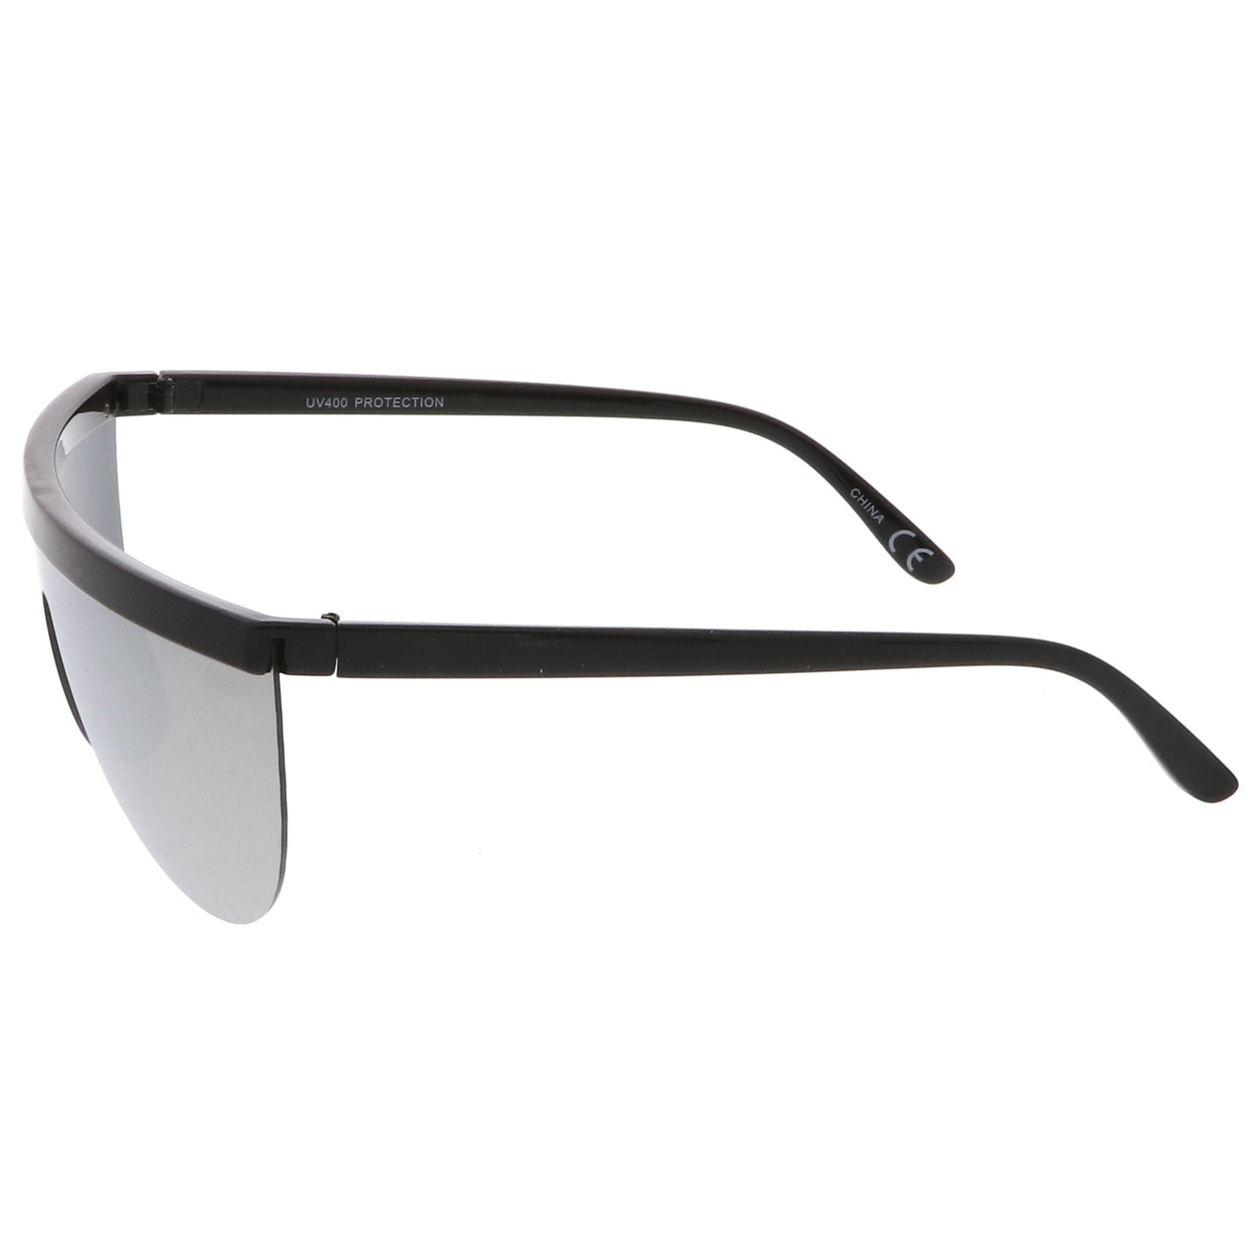 Futuristic Semi-Rimless Flat Top Colored Mirror Mono Lens Shield Sunglasses 65mm - Black / Gold Mirror